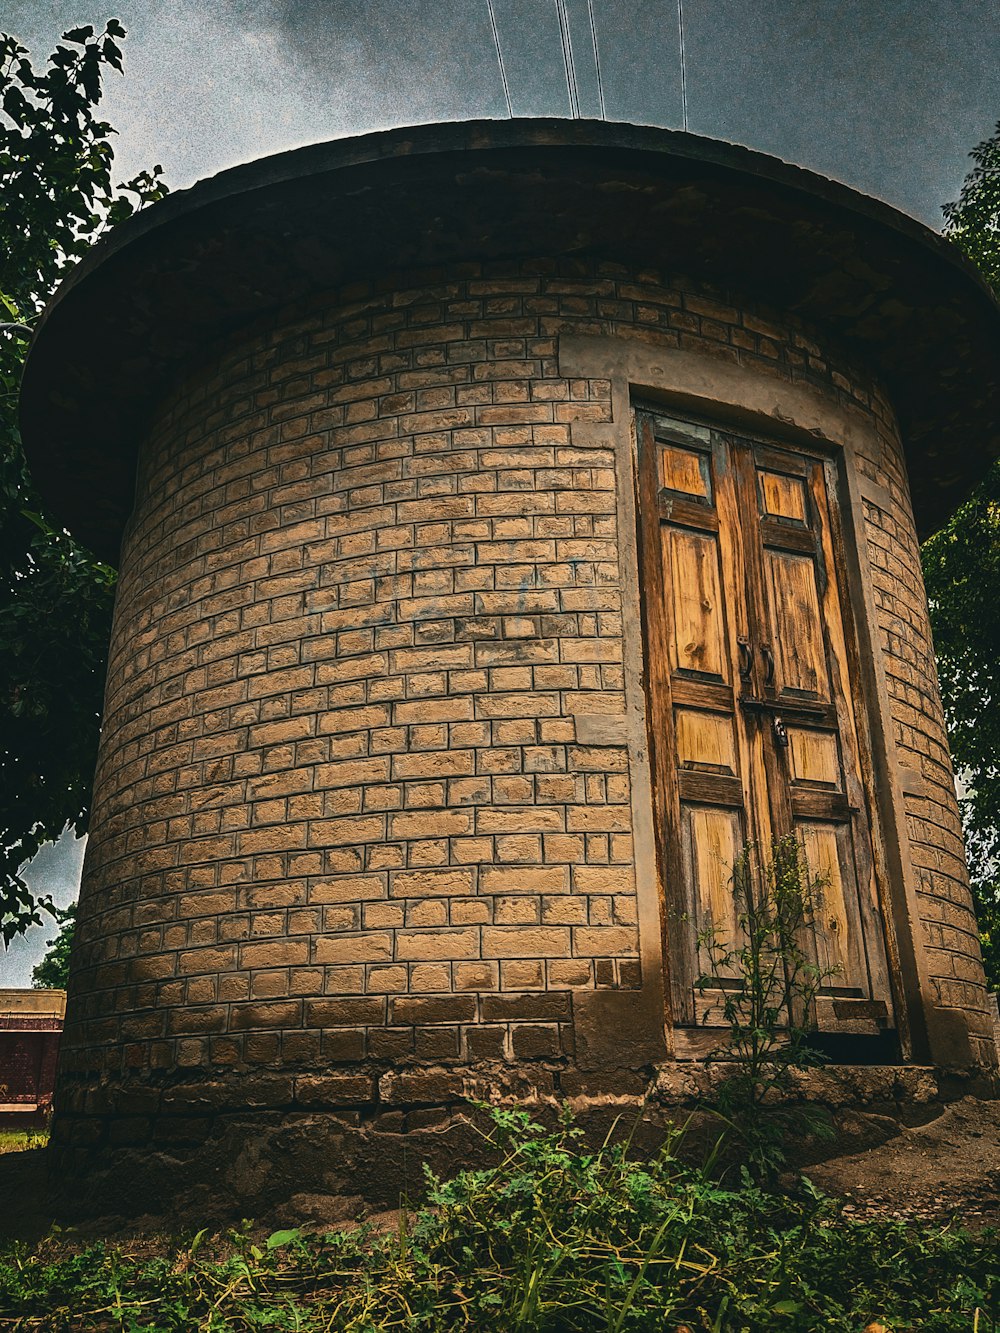 a brick building with a door